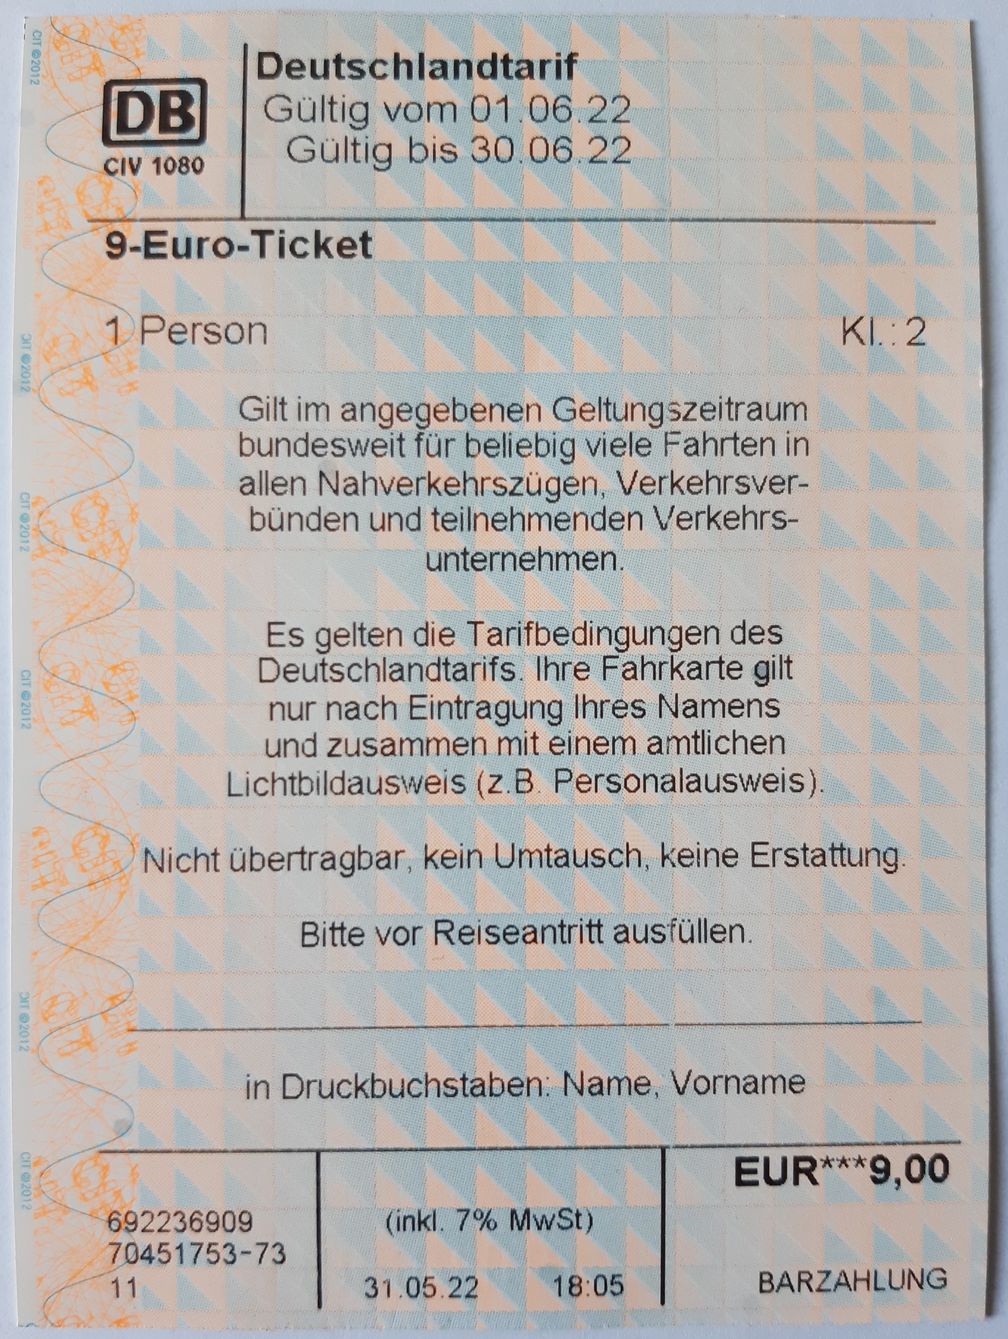 Von einem Fahrkartenautomaten der Deutschen Bahn ausgegebenes 9-Euro-Ticket für Neukunden mit Verweis auf den maßgeblichen Deutschlandtarif